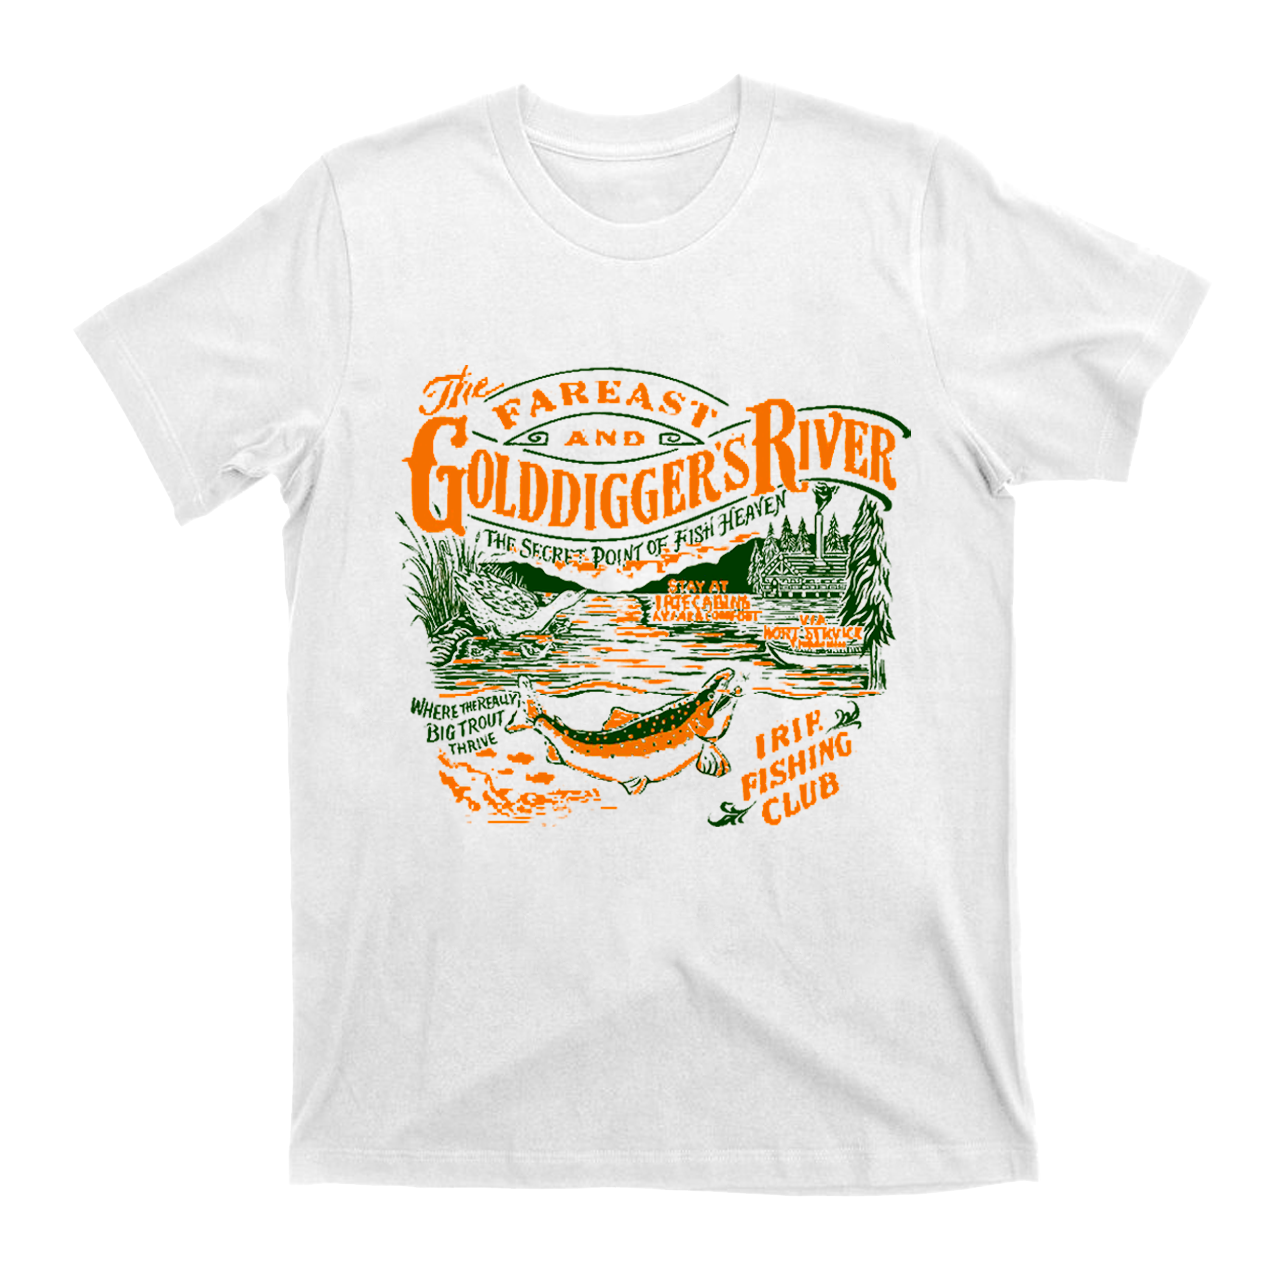 Gold Digger's River T-Shirts